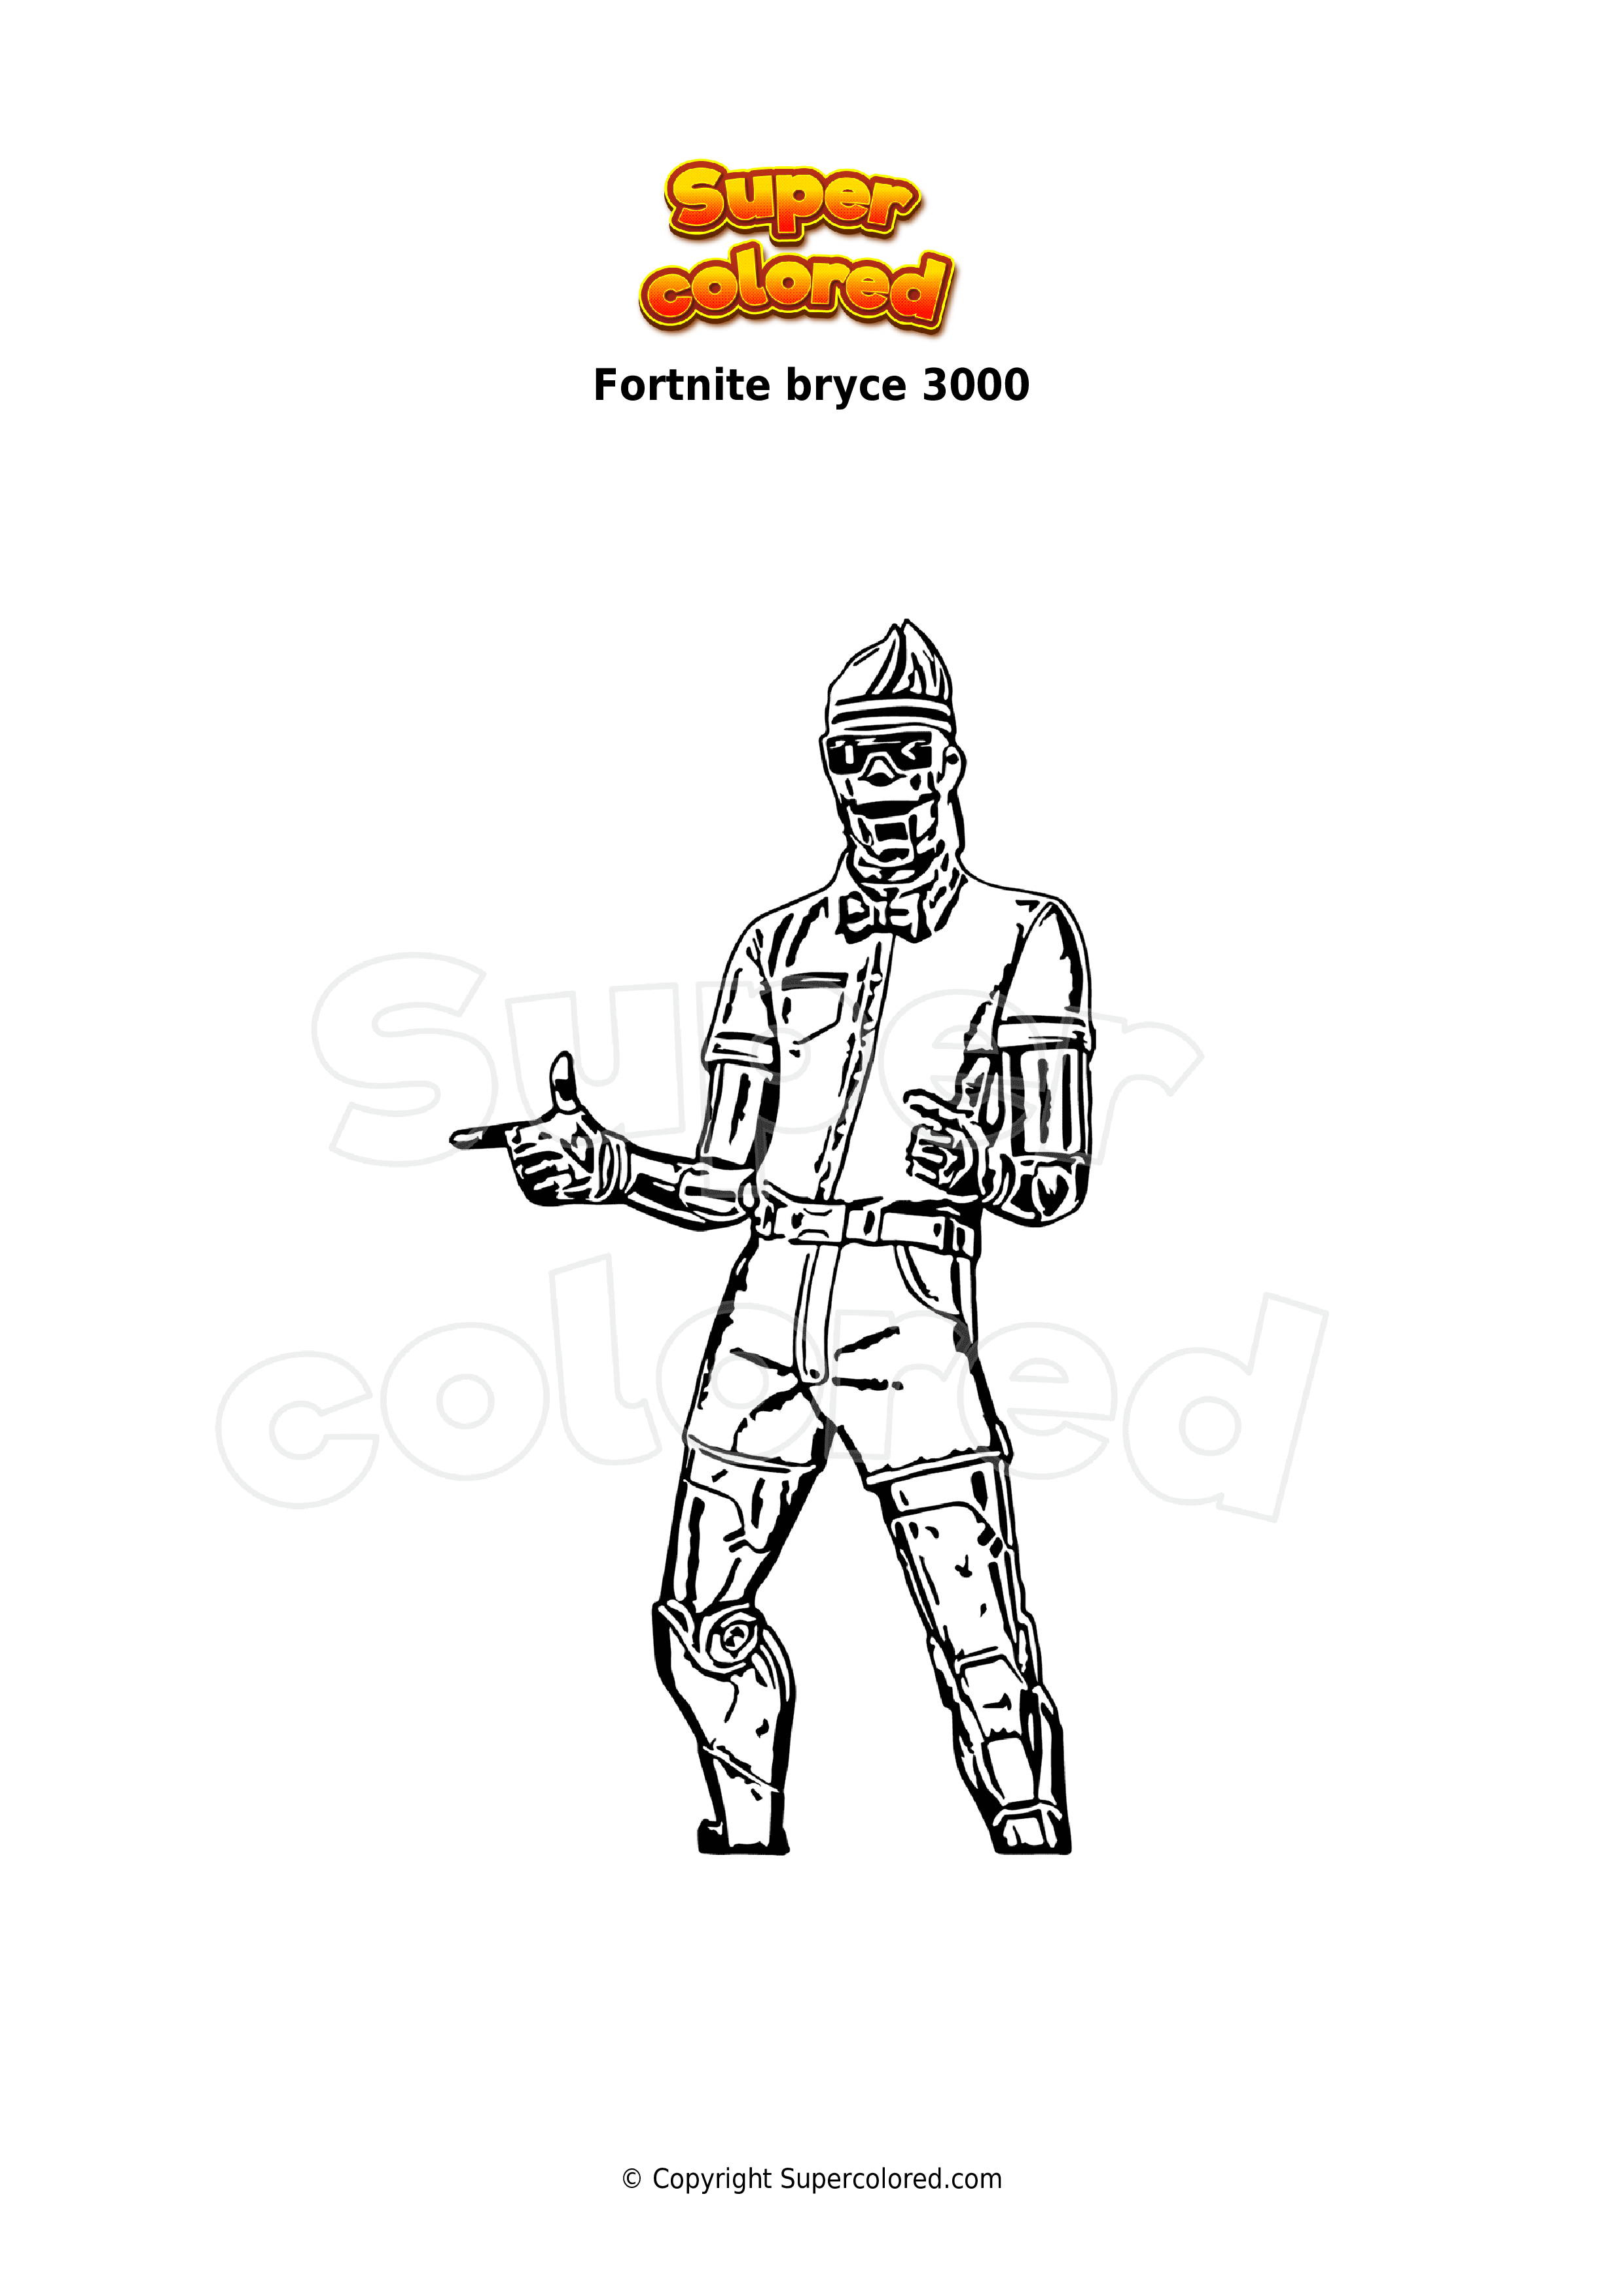 Dibujo para colorear Fortnite bryce 3000 - Supercolored.com